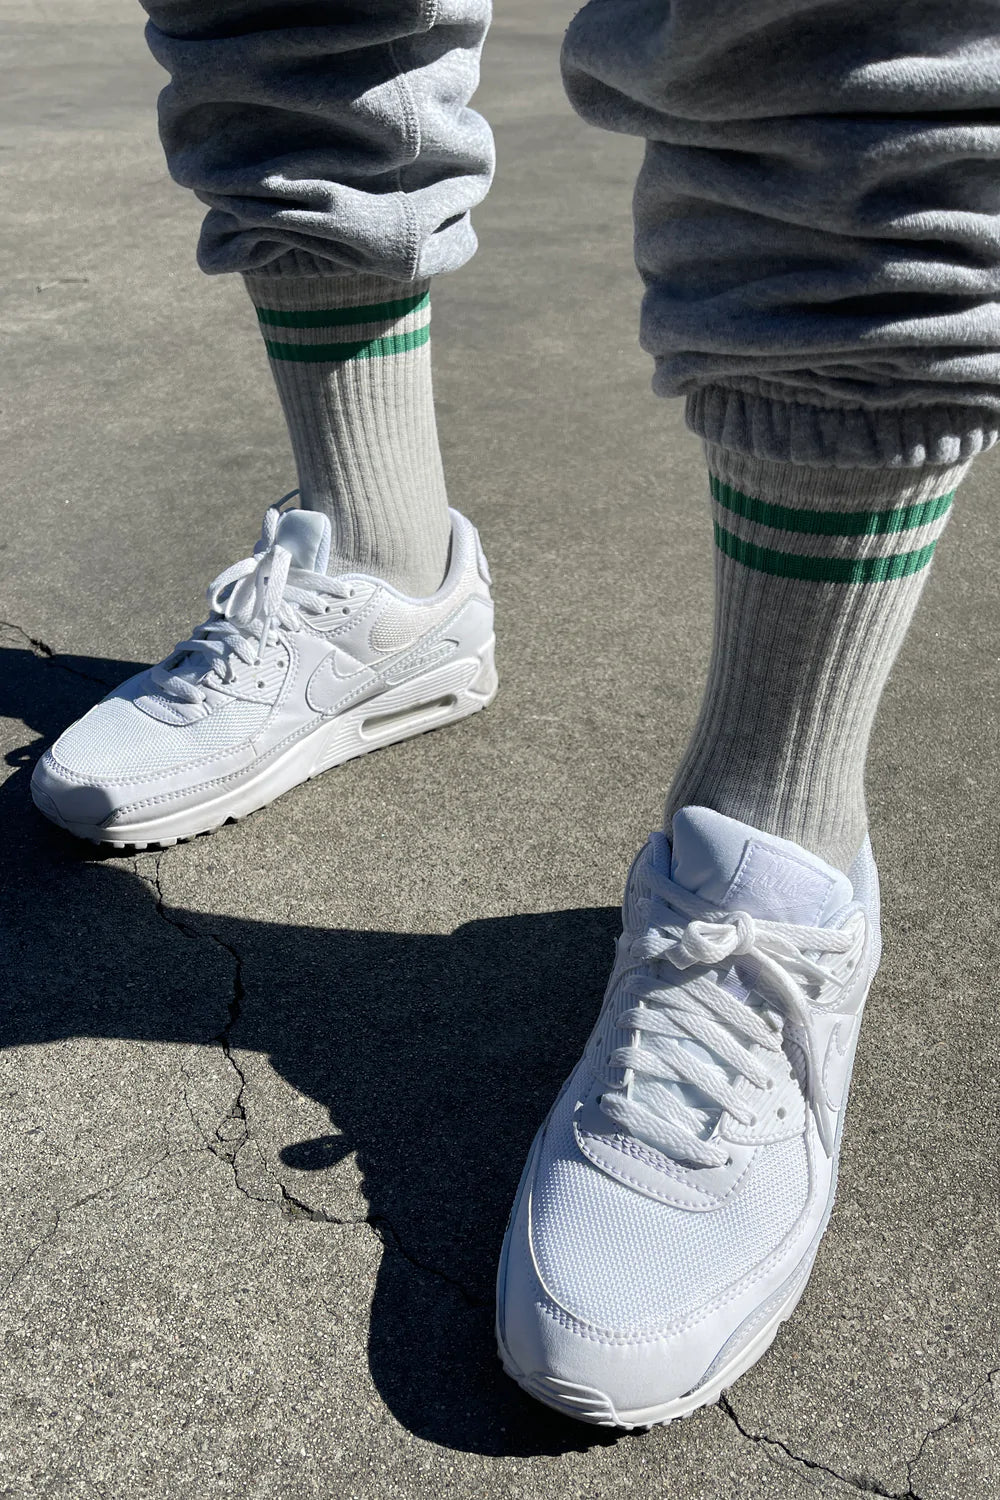 Product Image for Extended Men's Boyfriend Socks, Light Grey